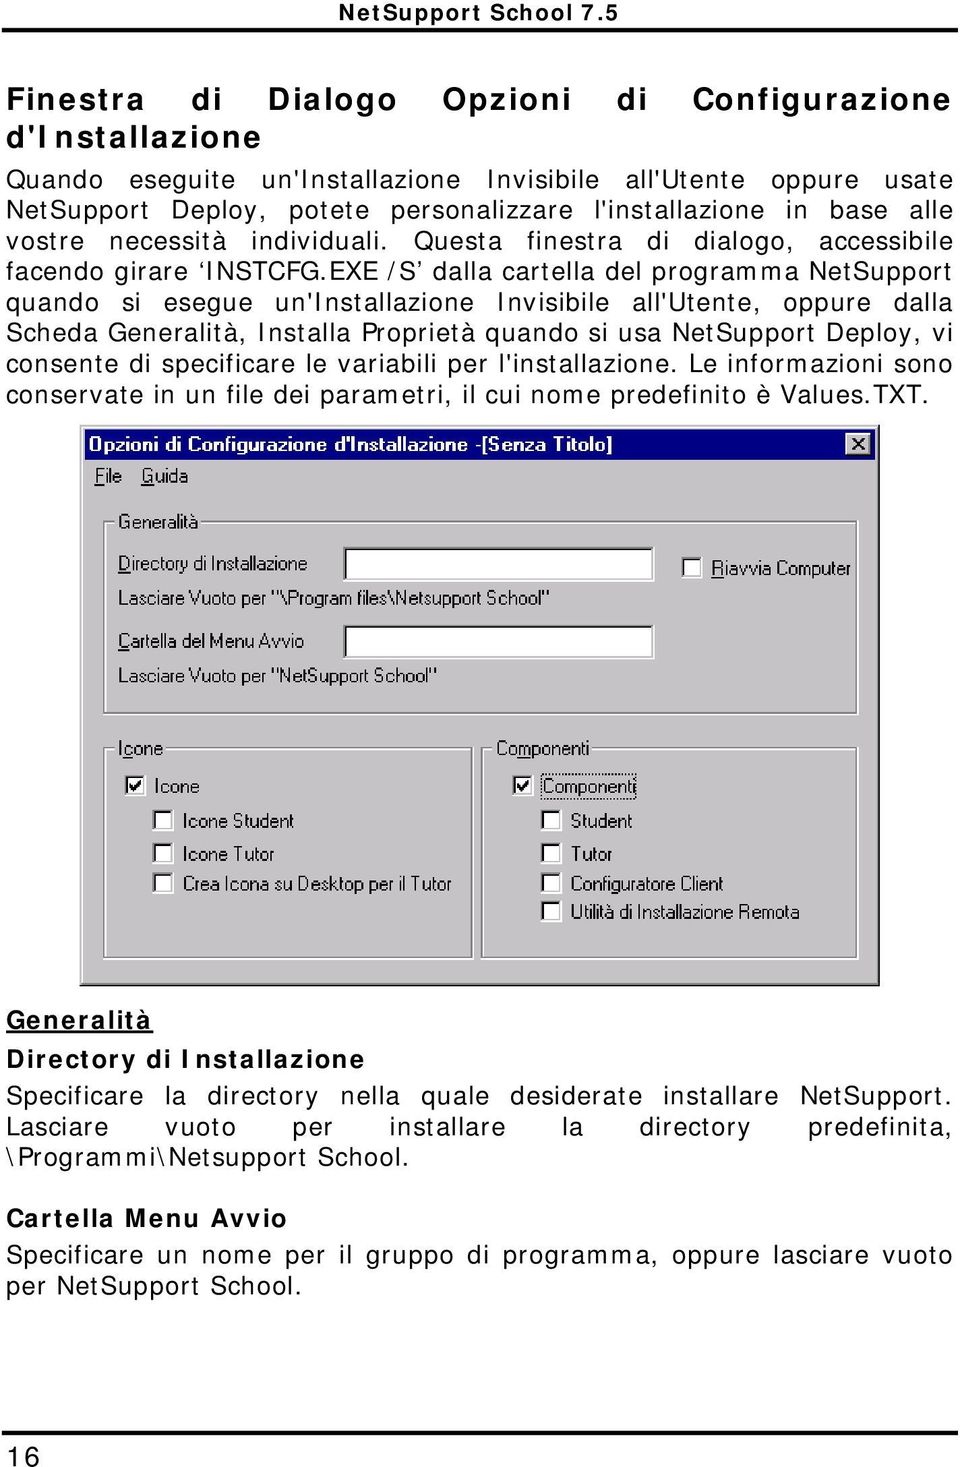 EXE /S dalla cartella del programma NetSupport quando si esegue un'installazione Invisibile all'utente, oppure dalla Scheda Generalità, Installa Proprietà quando si usa NetSupport Deploy, vi consente